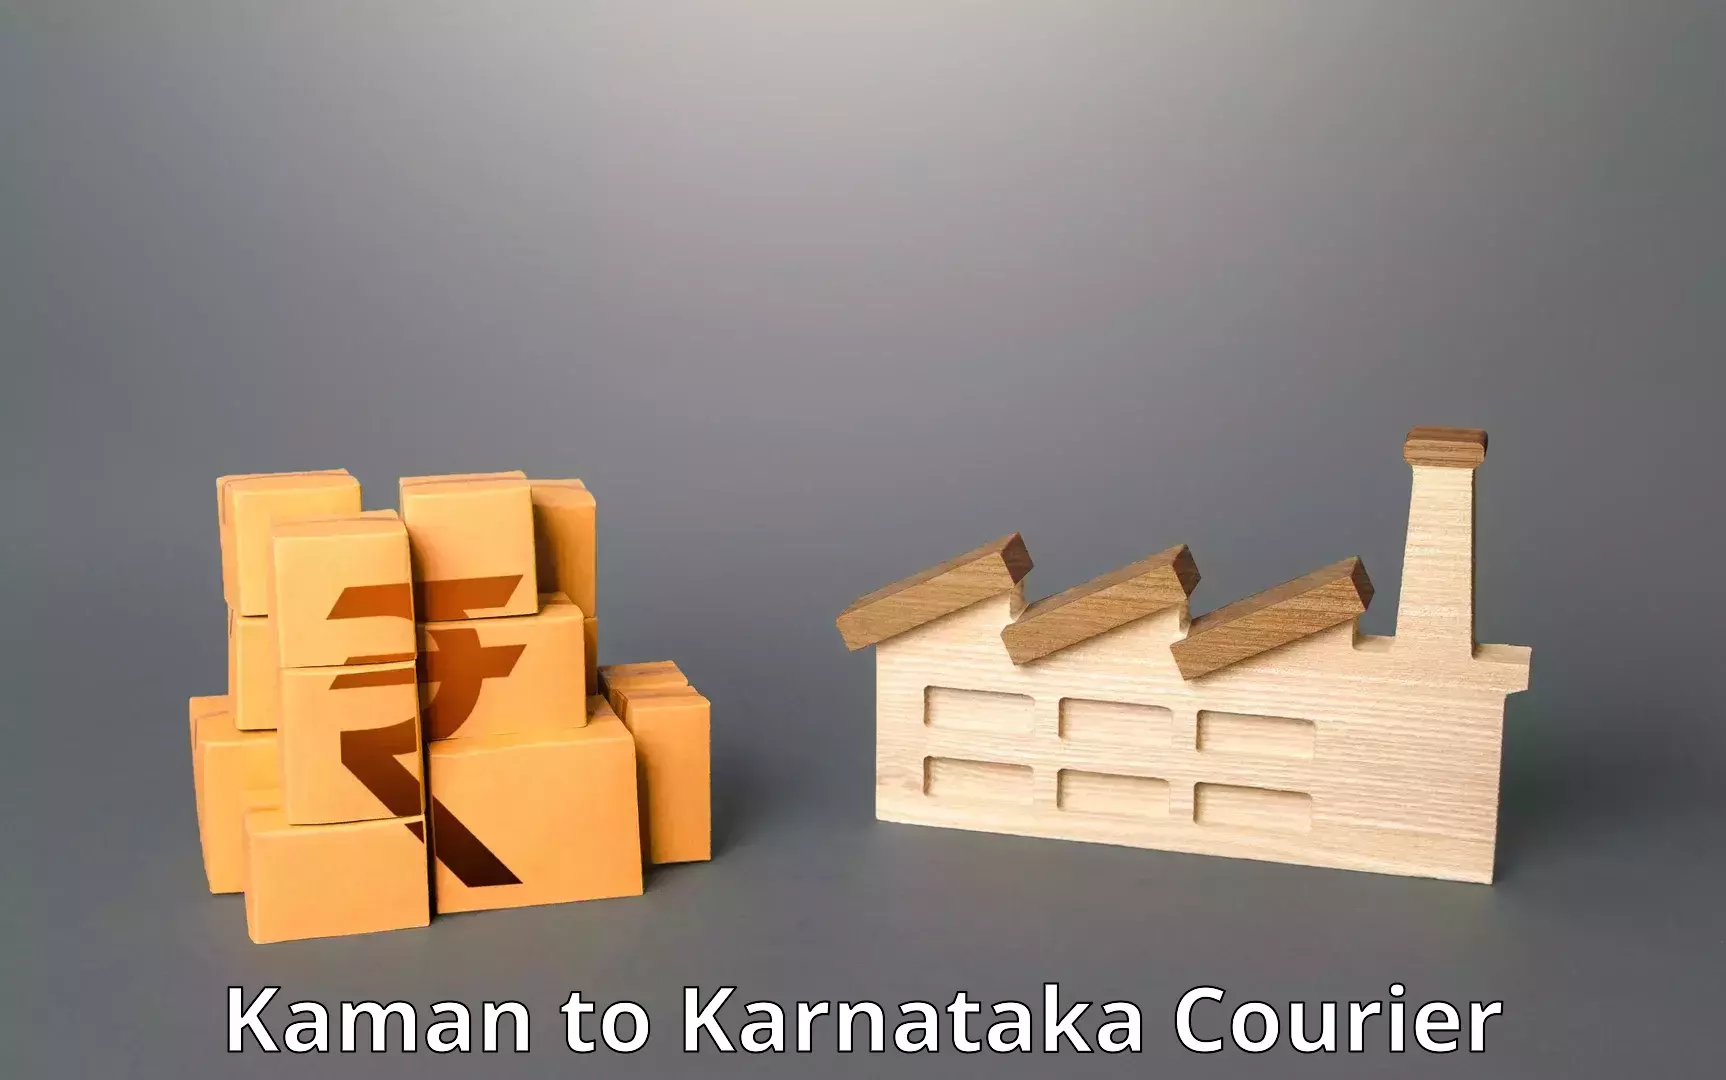 Bulk shipment Kaman to Karnataka